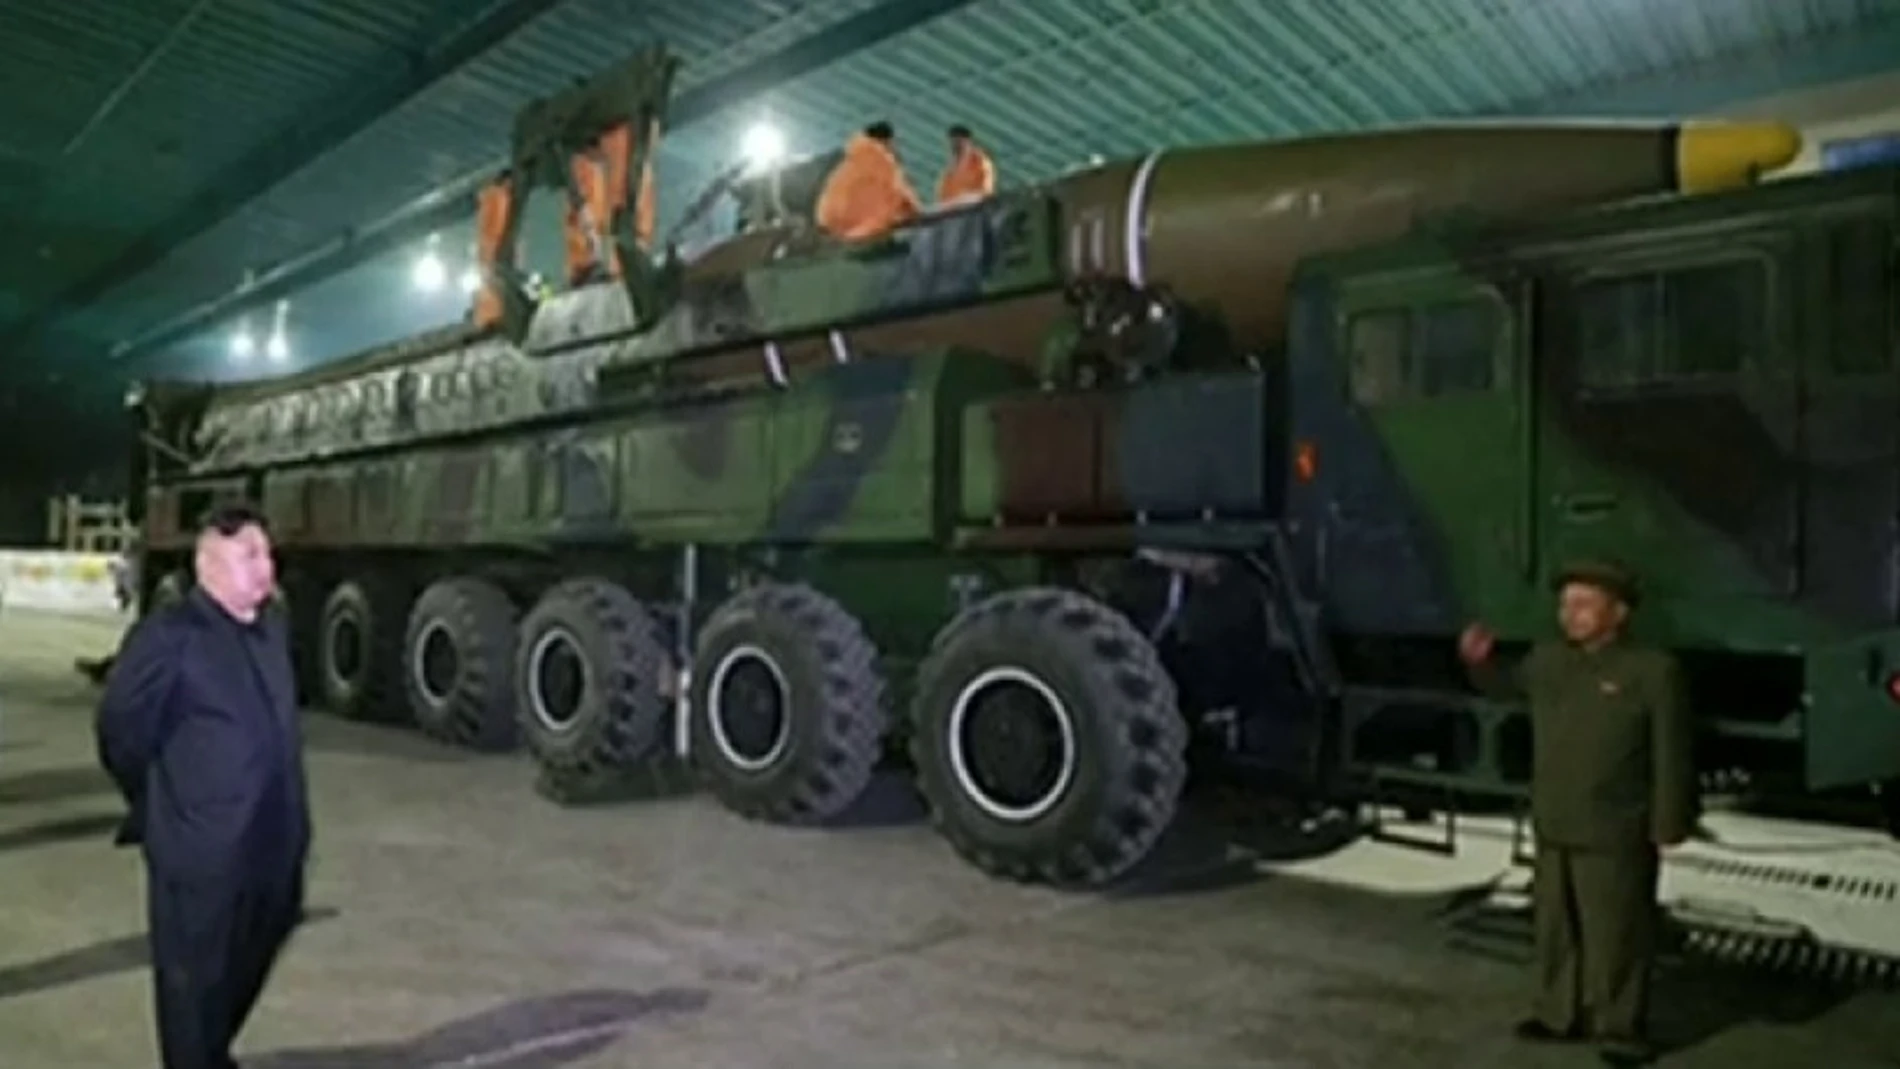 Lanzamiento de un misil por parte de Corea del Norte